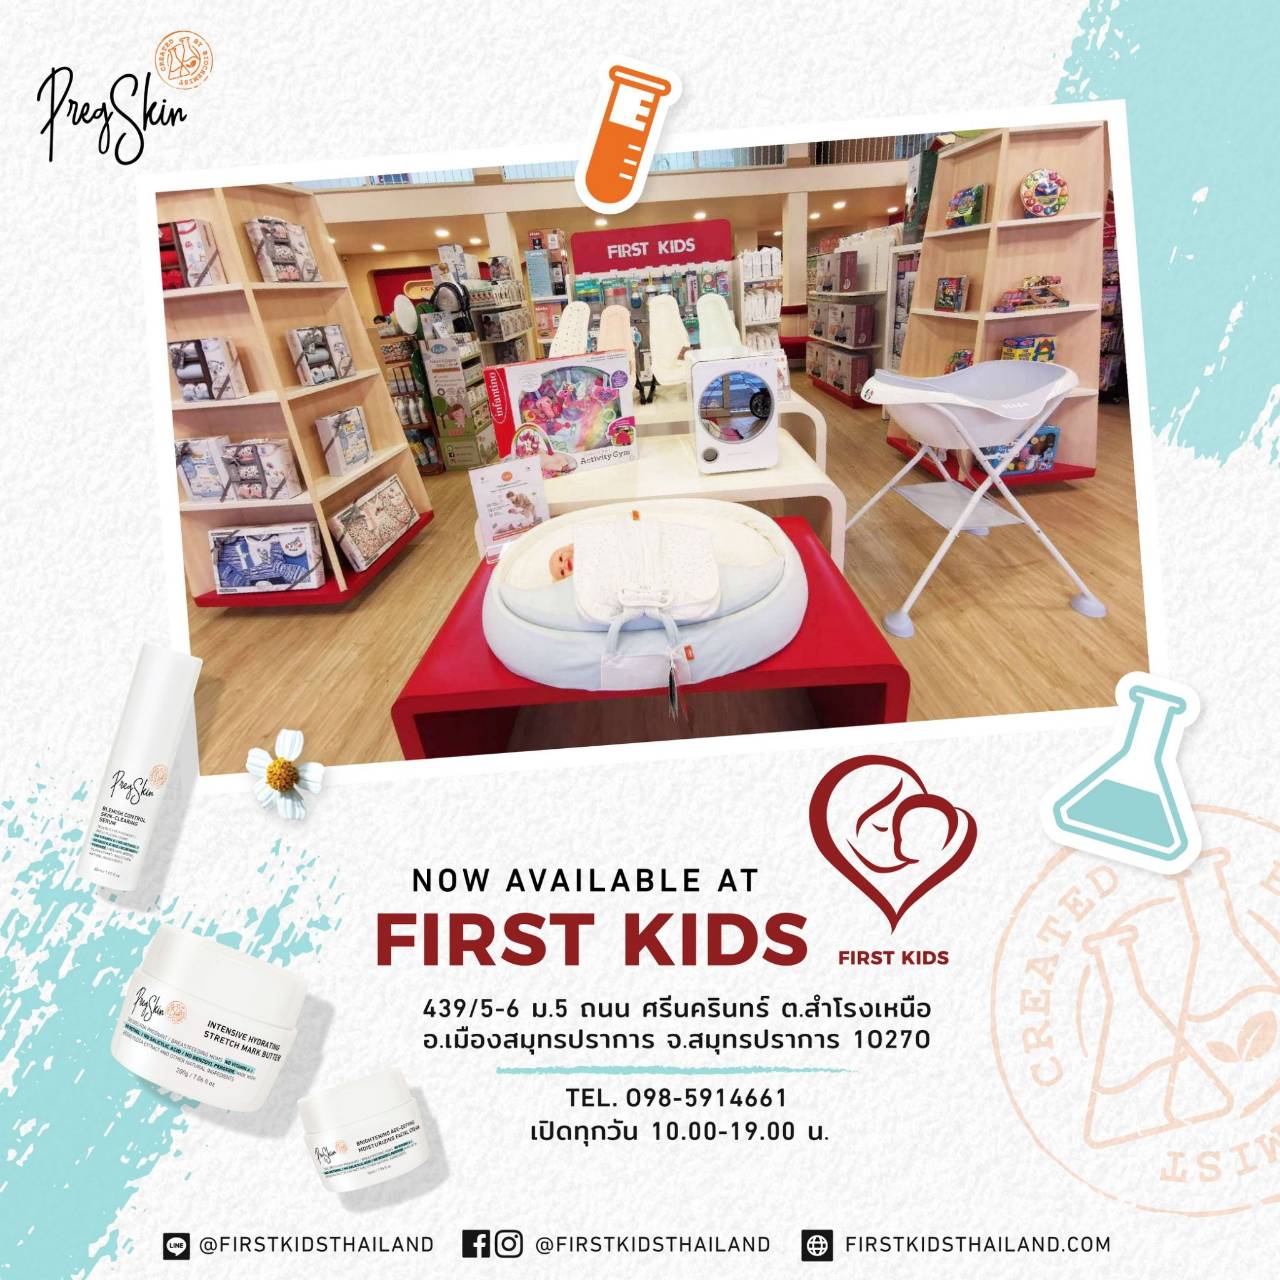 First Kids Store PregSkin